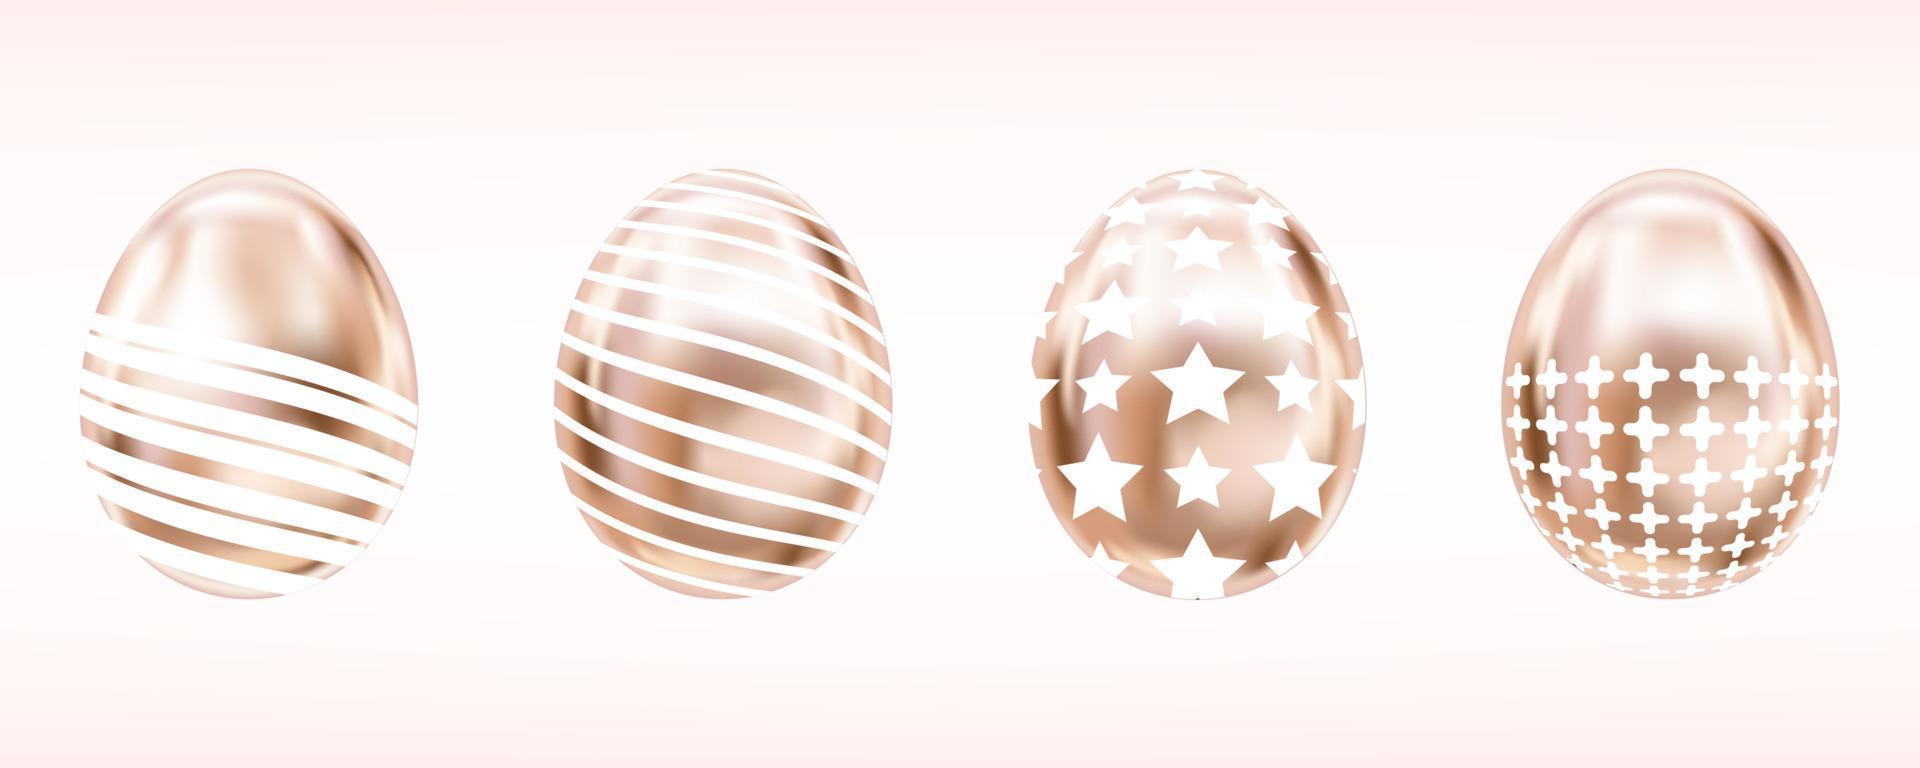 vier blik metallic eieren in roze kleur met witte ster, kruis en strepen. geïsoleerde objecten voor paasdecoratie vector